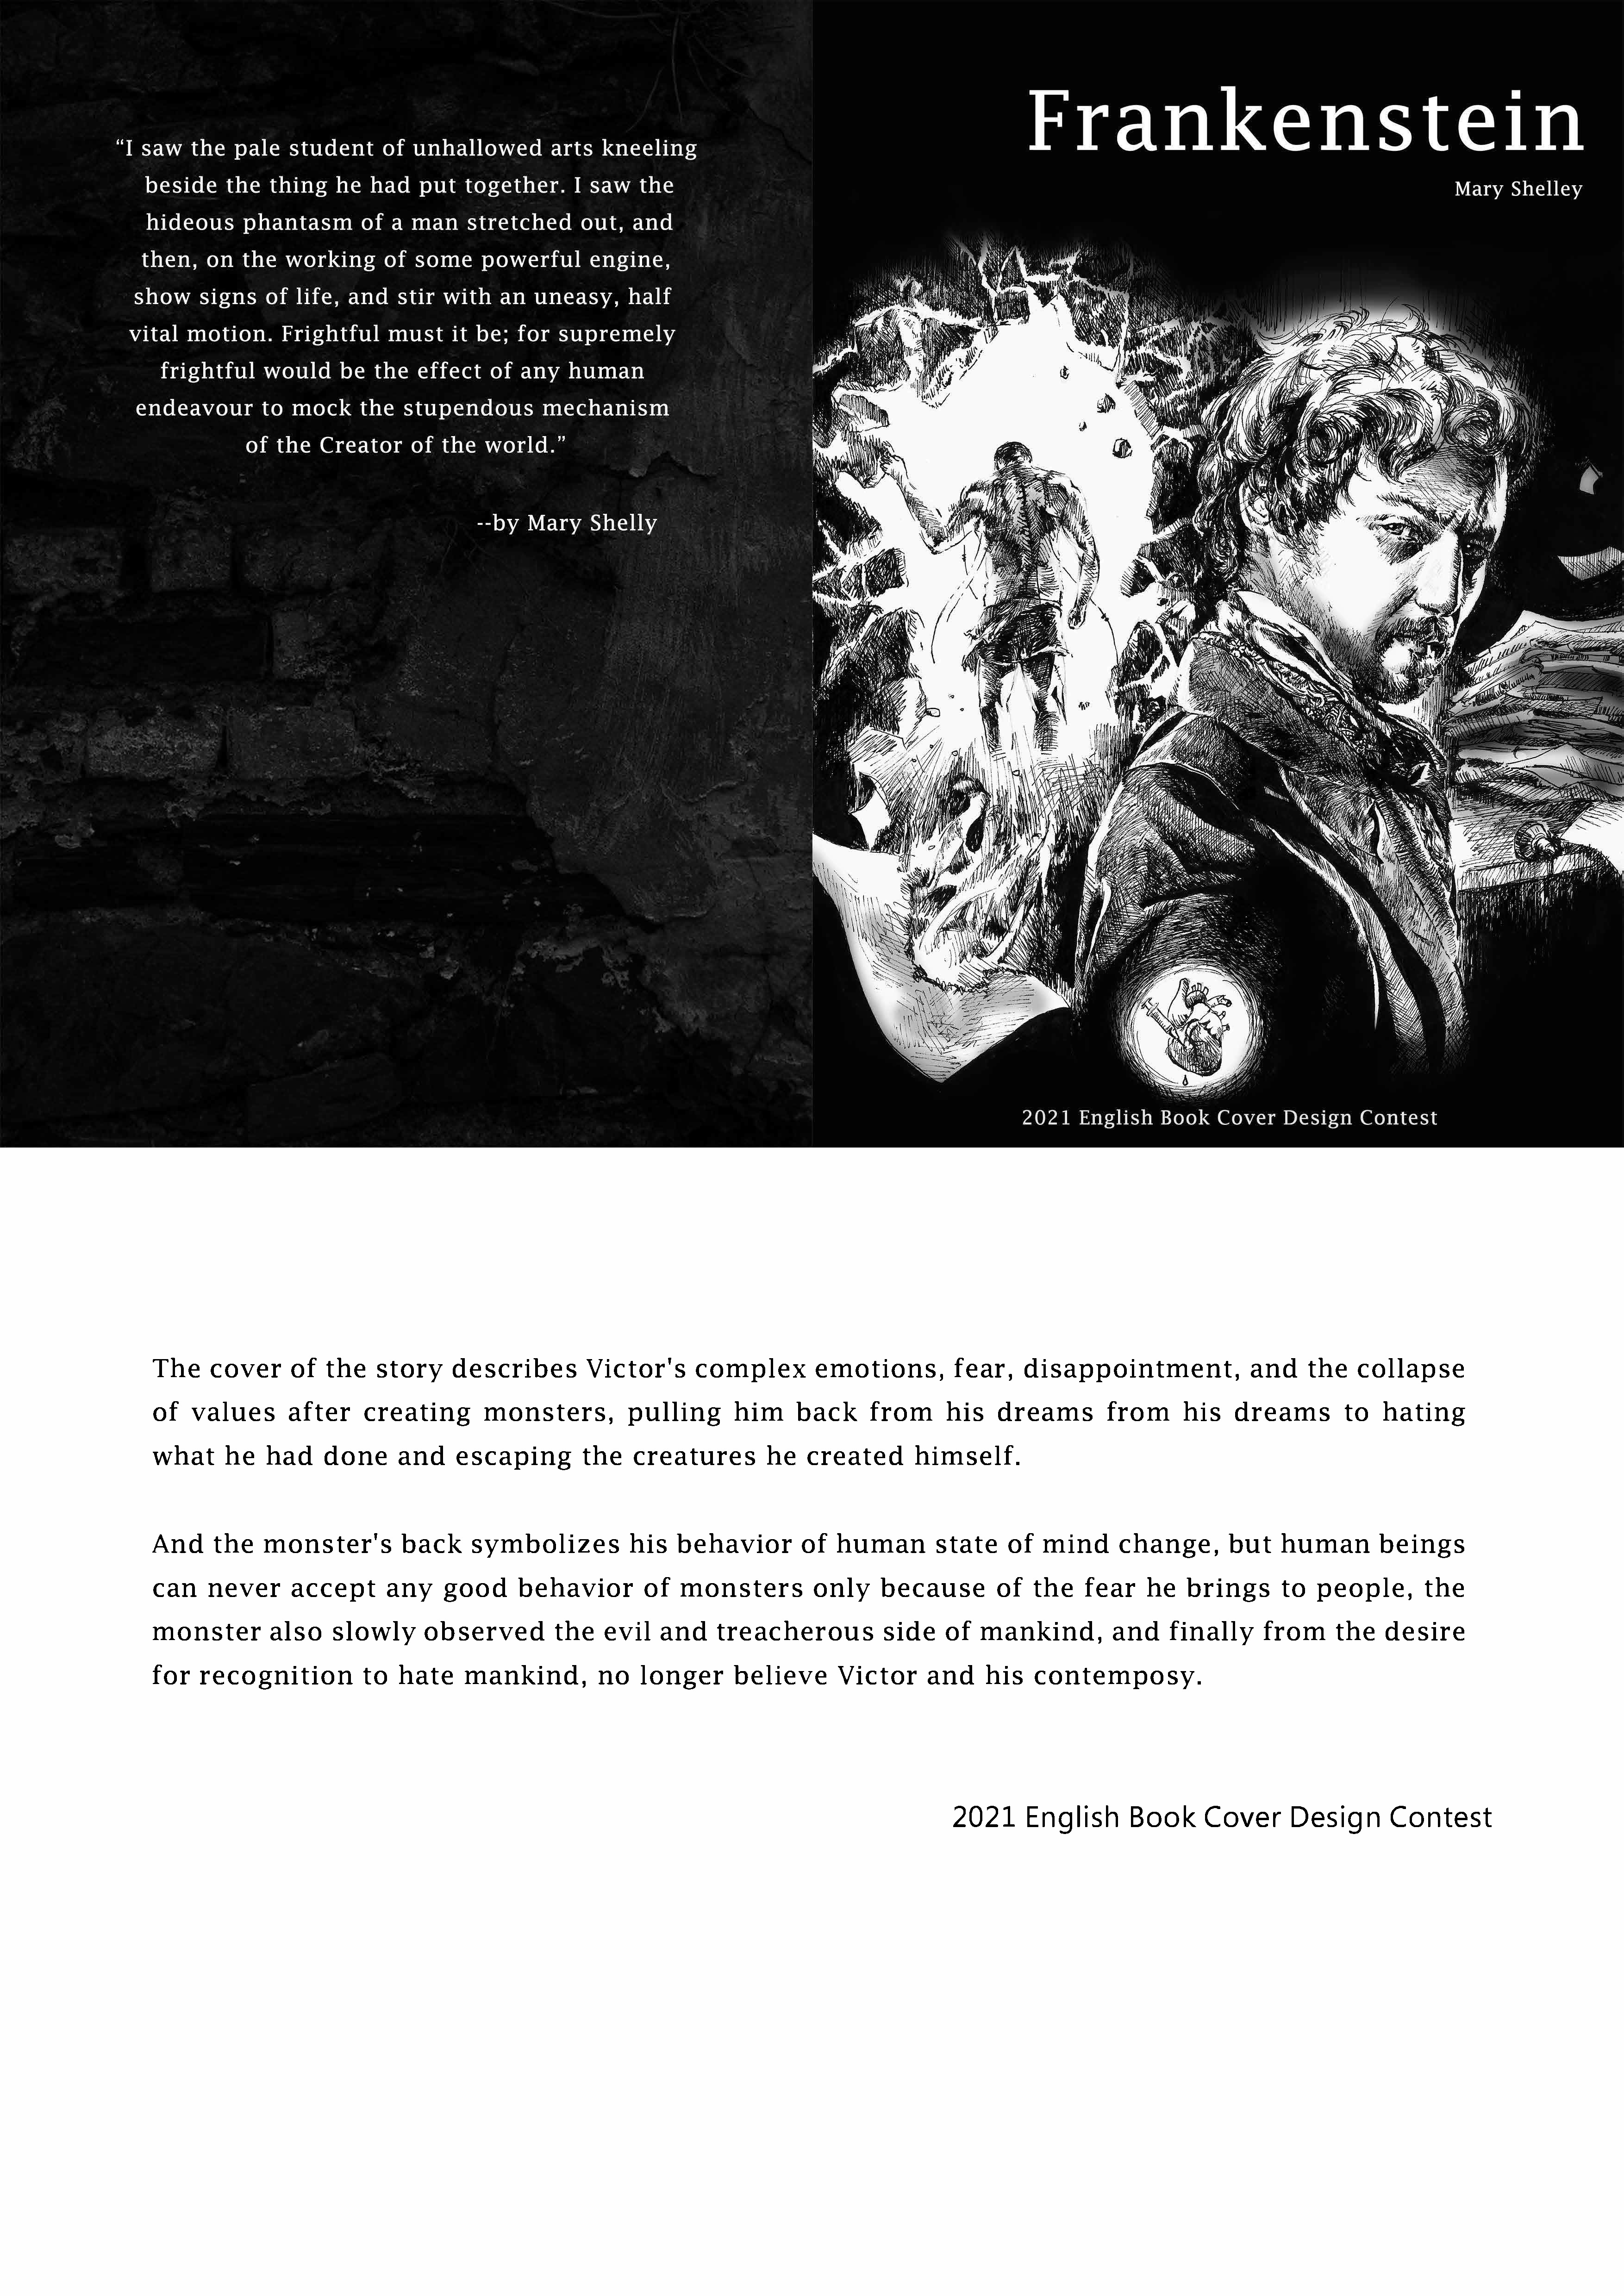 亞大語發中心「2021英文讀本封面設計比賽」國內組第一名作品「科學怪人」。